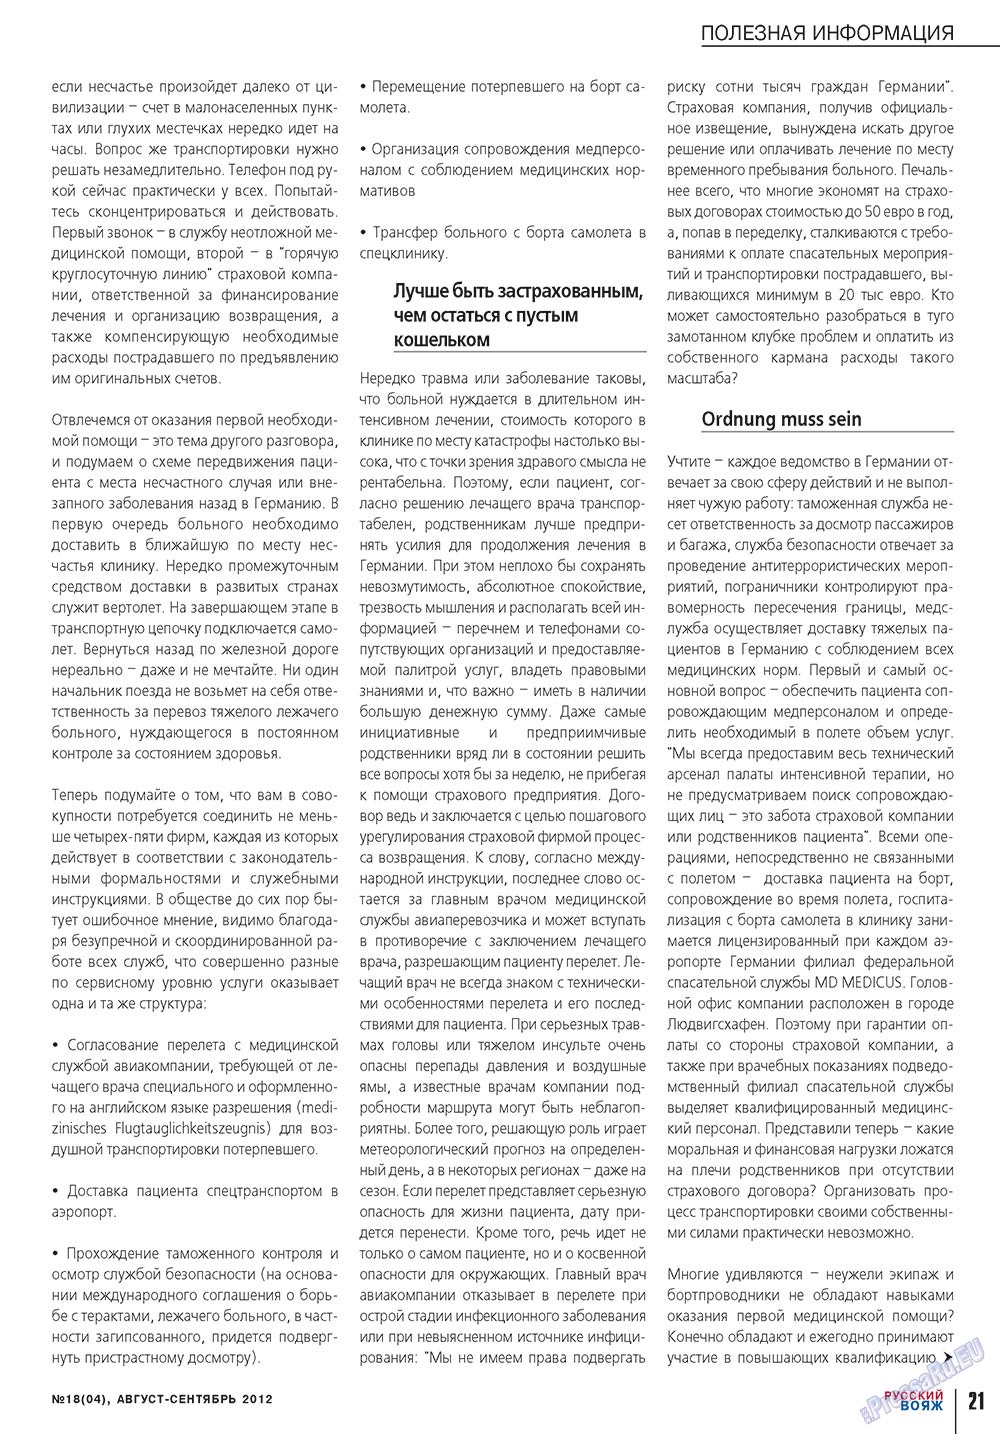 Русский вояж, журнал. 2012 №18 стр.21